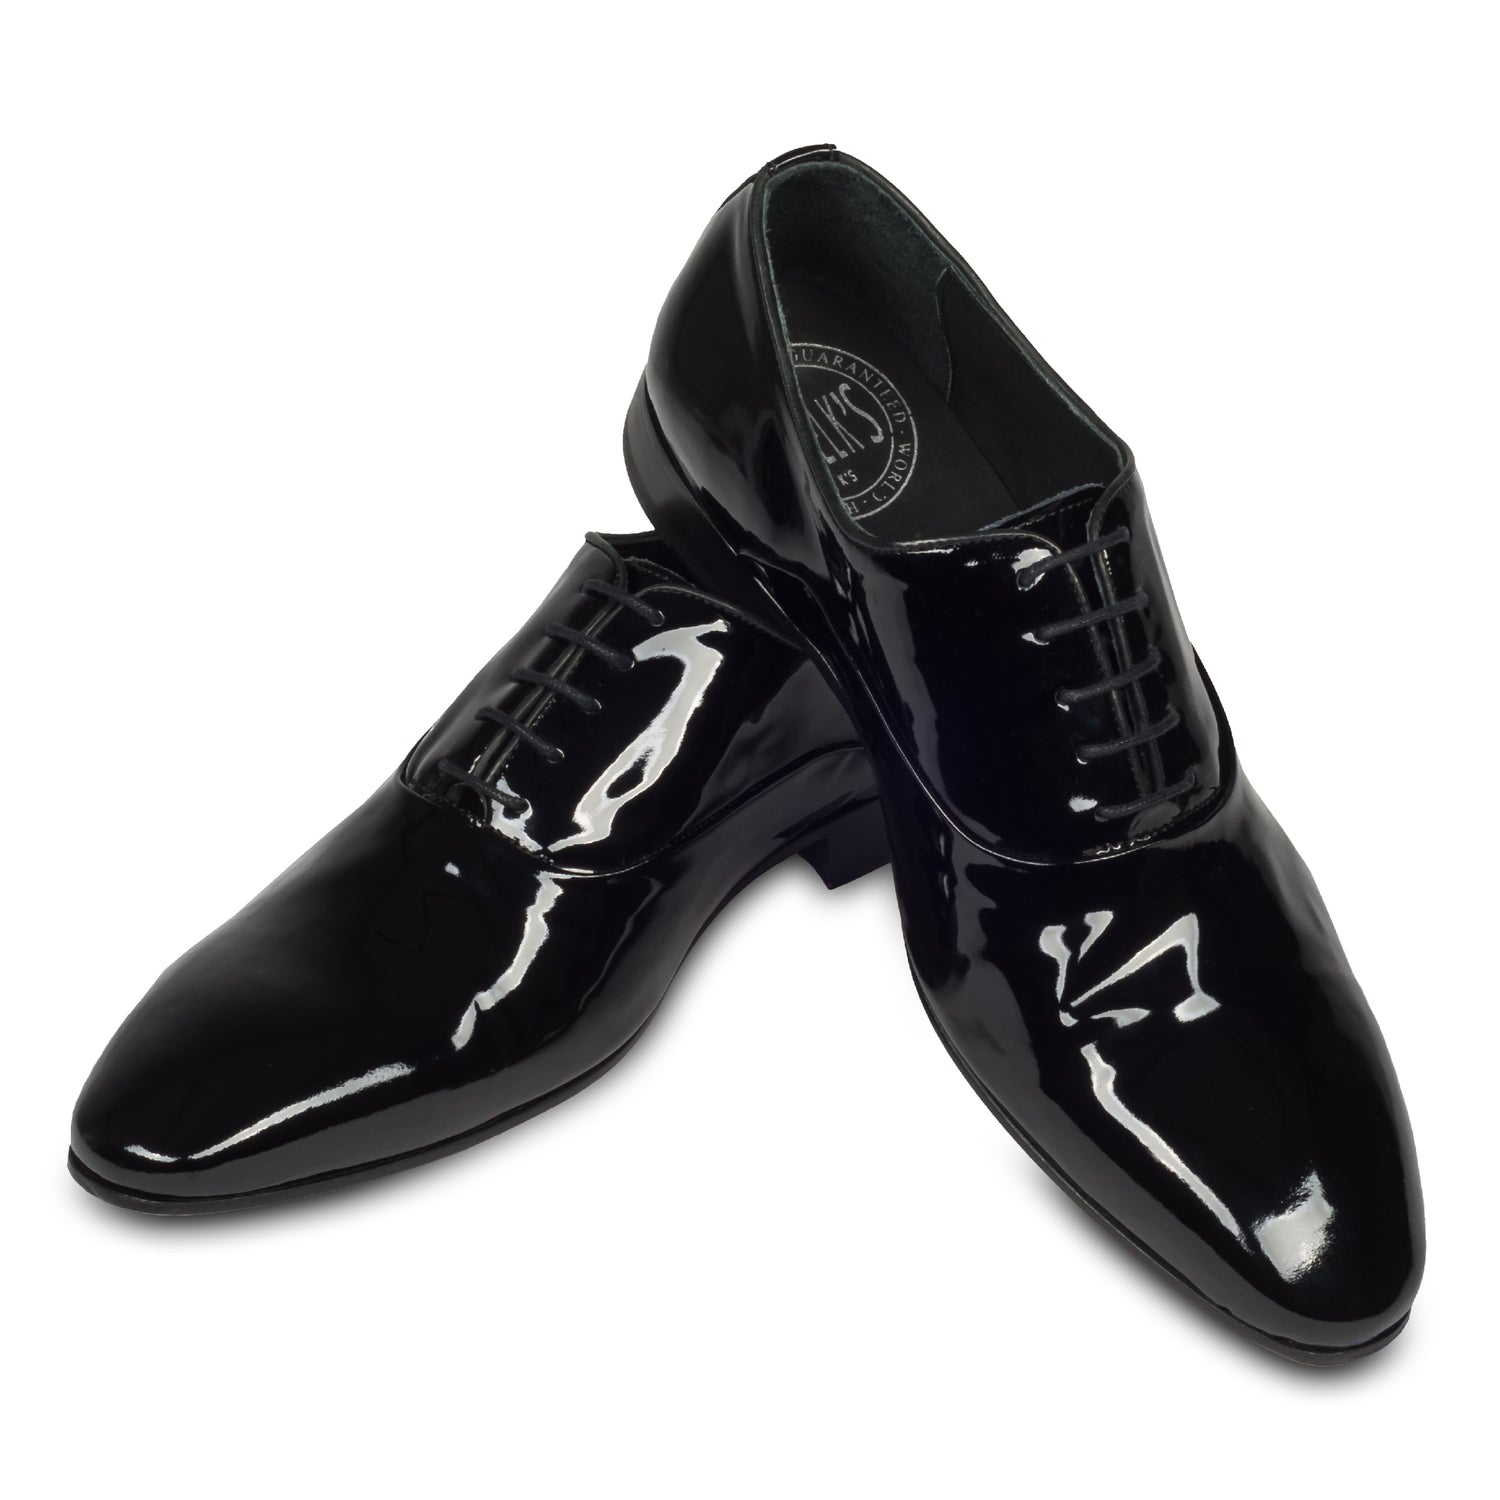 Pawelks - Italienische Herren Anzugschuhe, Lackschuhe Oxford in schwarz. Aus Kalbsleder handgefertigt. Paarweise Ansicht Schuhe überkreuzt aufgestellt.